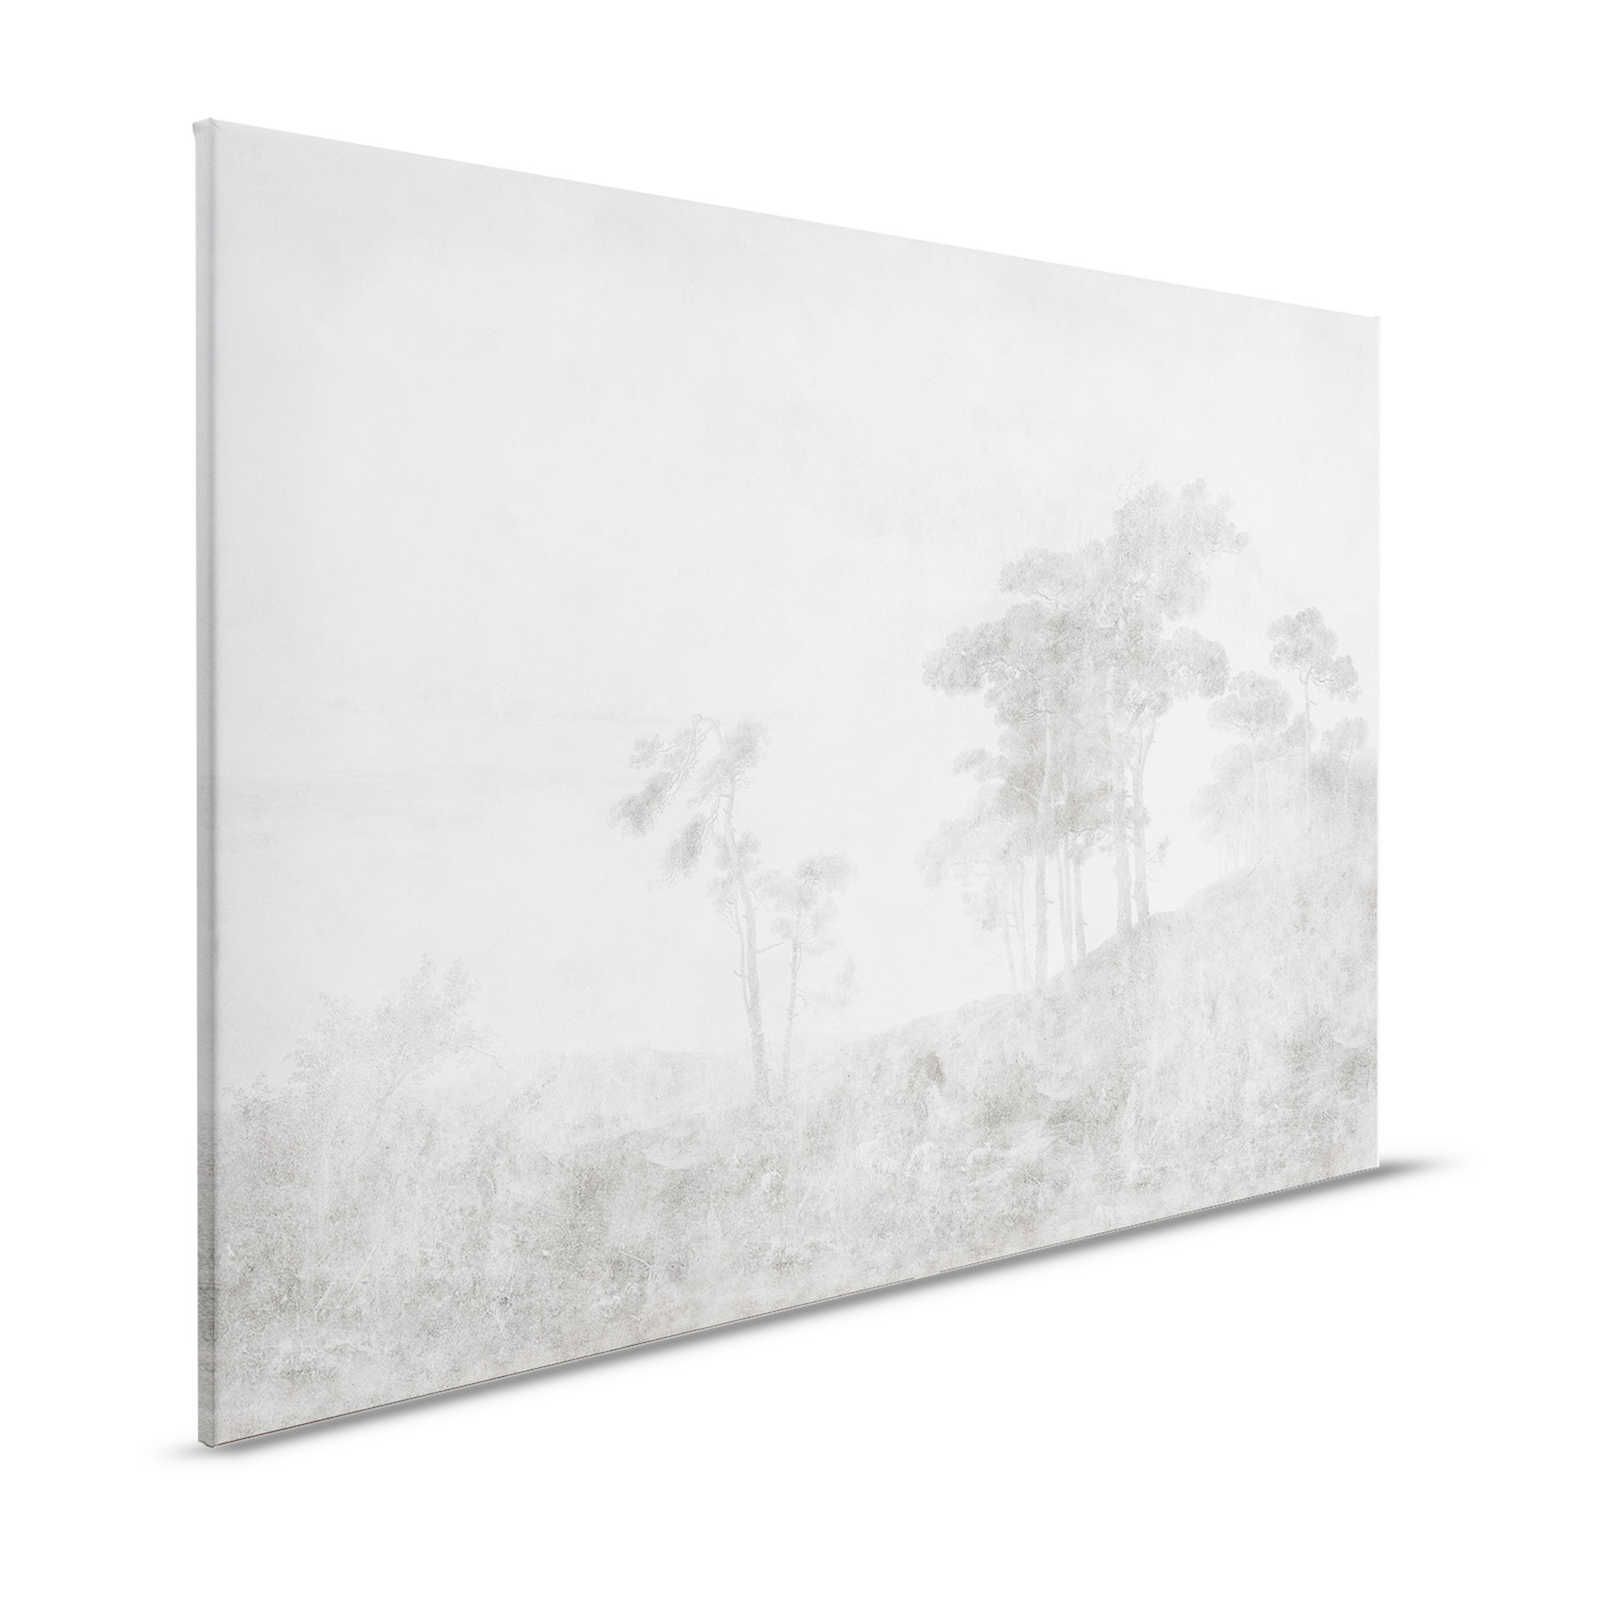 Romantic Grove 2 - Paesaggio dipinto su tela in stile vintage - 1,20 m x 0,80 m
